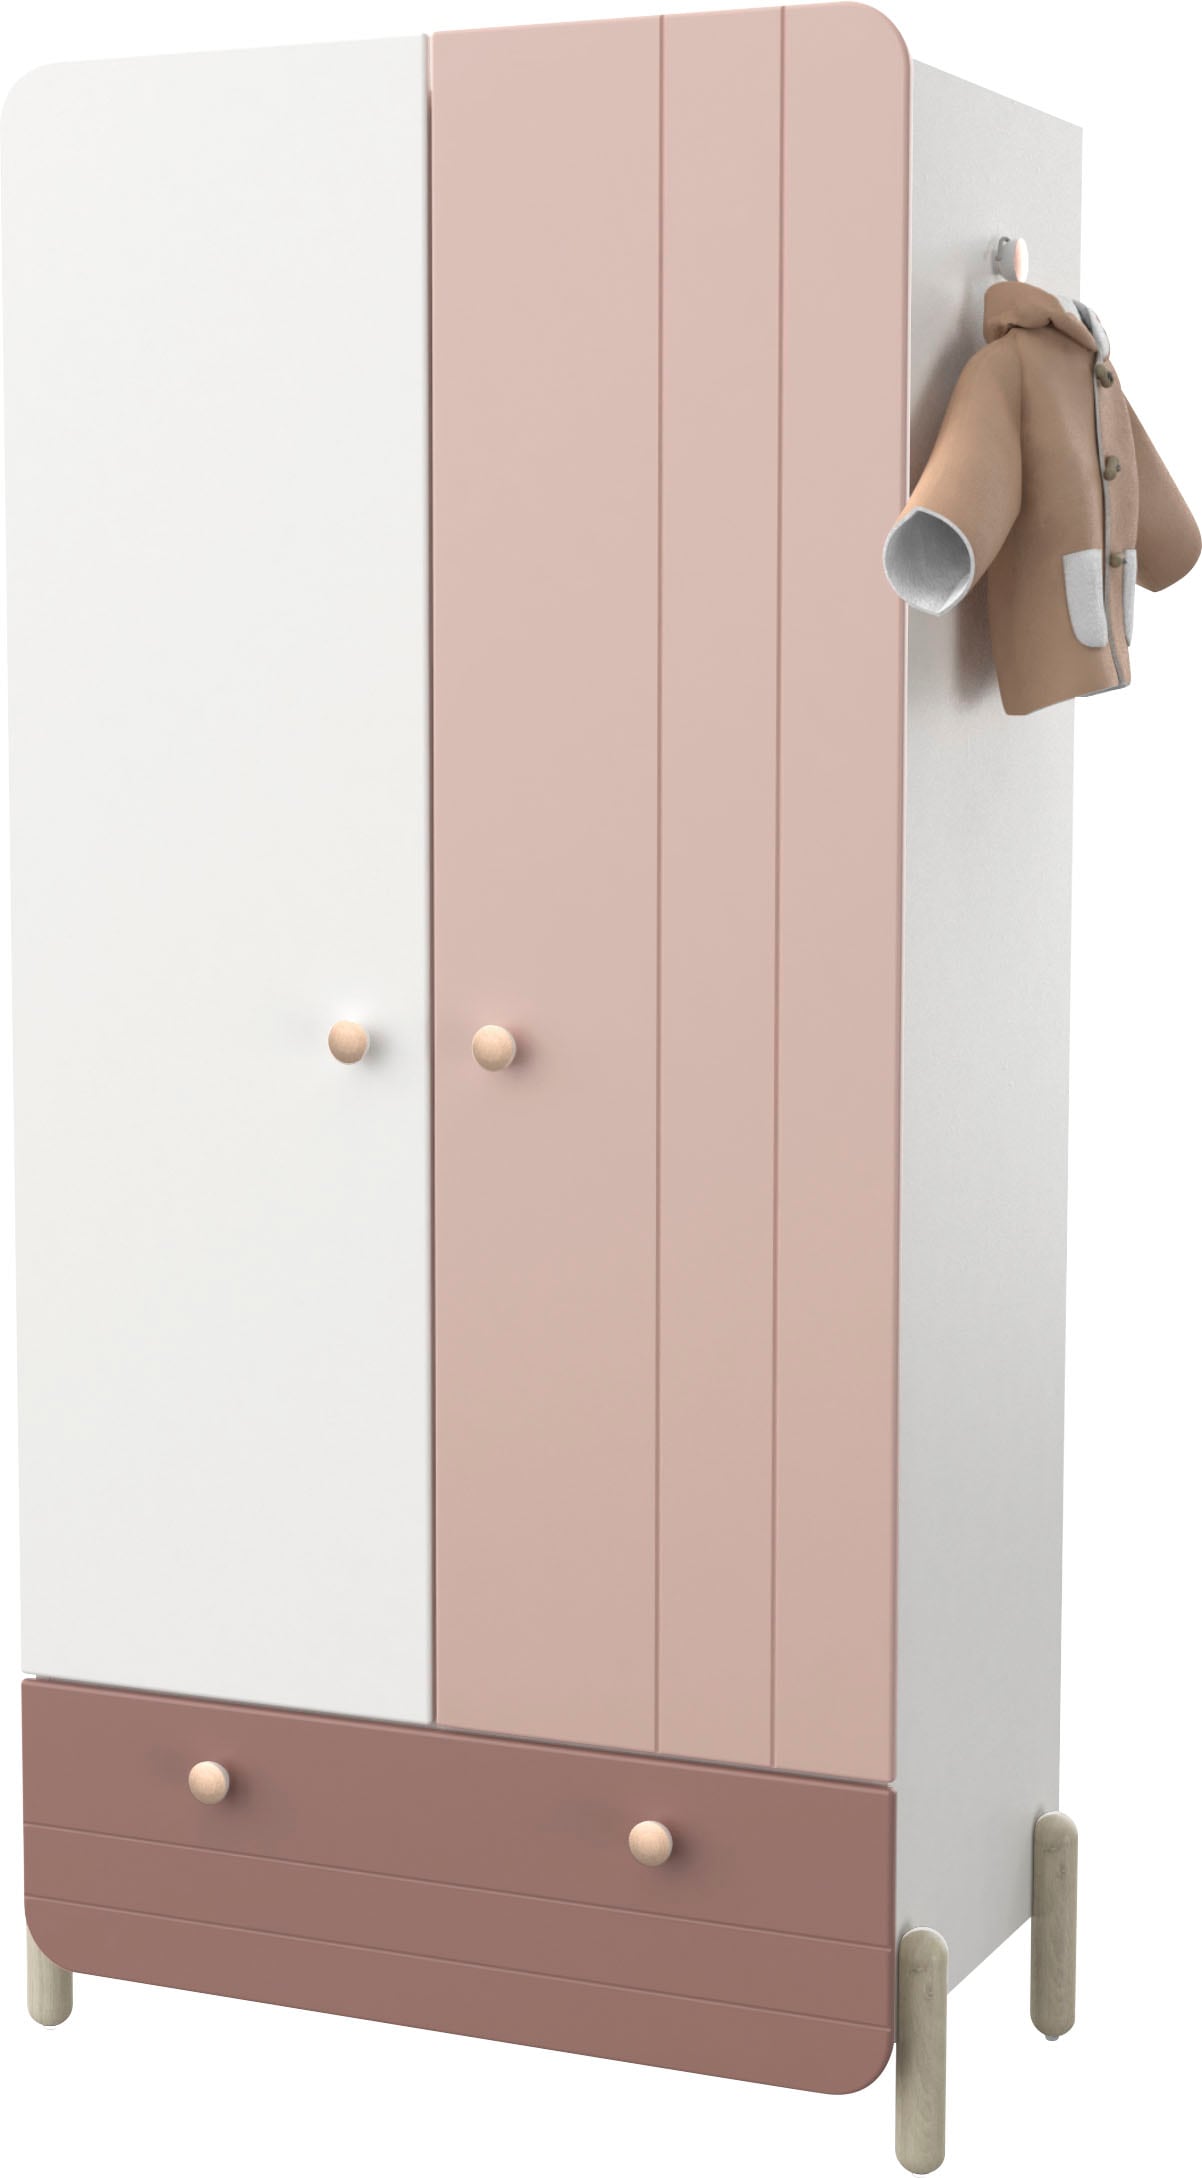 Demeyere GROUP Kleiderschrank »Janne,Breite ca. 90cm, Höhe ca. 180cm, 4 Türen«, mit grosszügigen Stauraum und praktische Funktionen